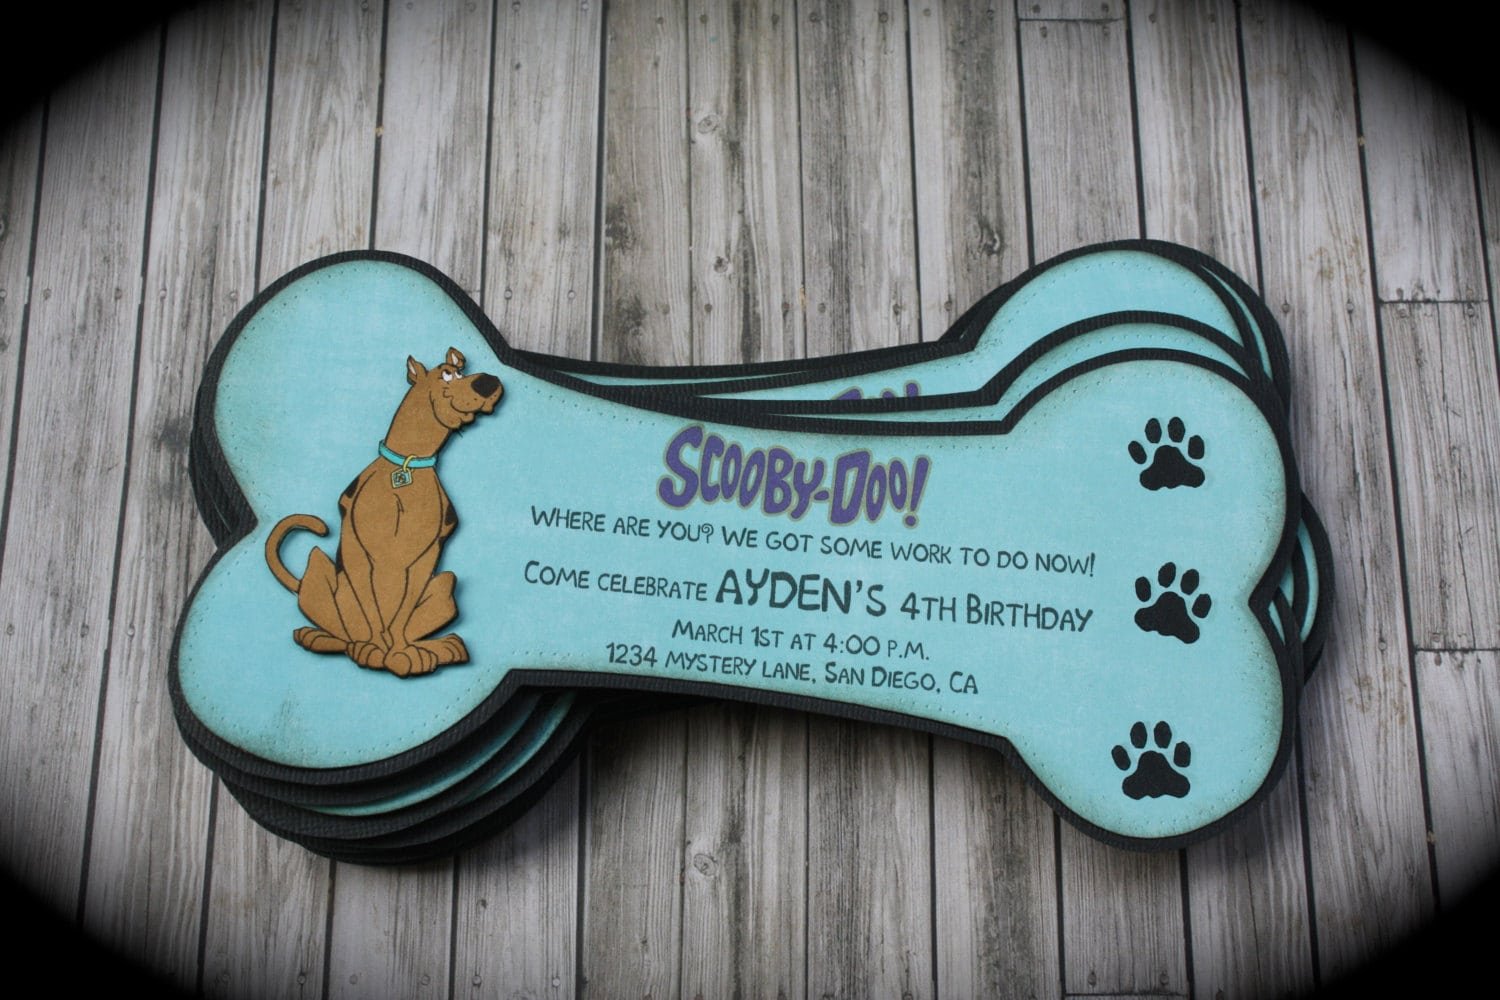 Scooby Doo Party Invitation Templates